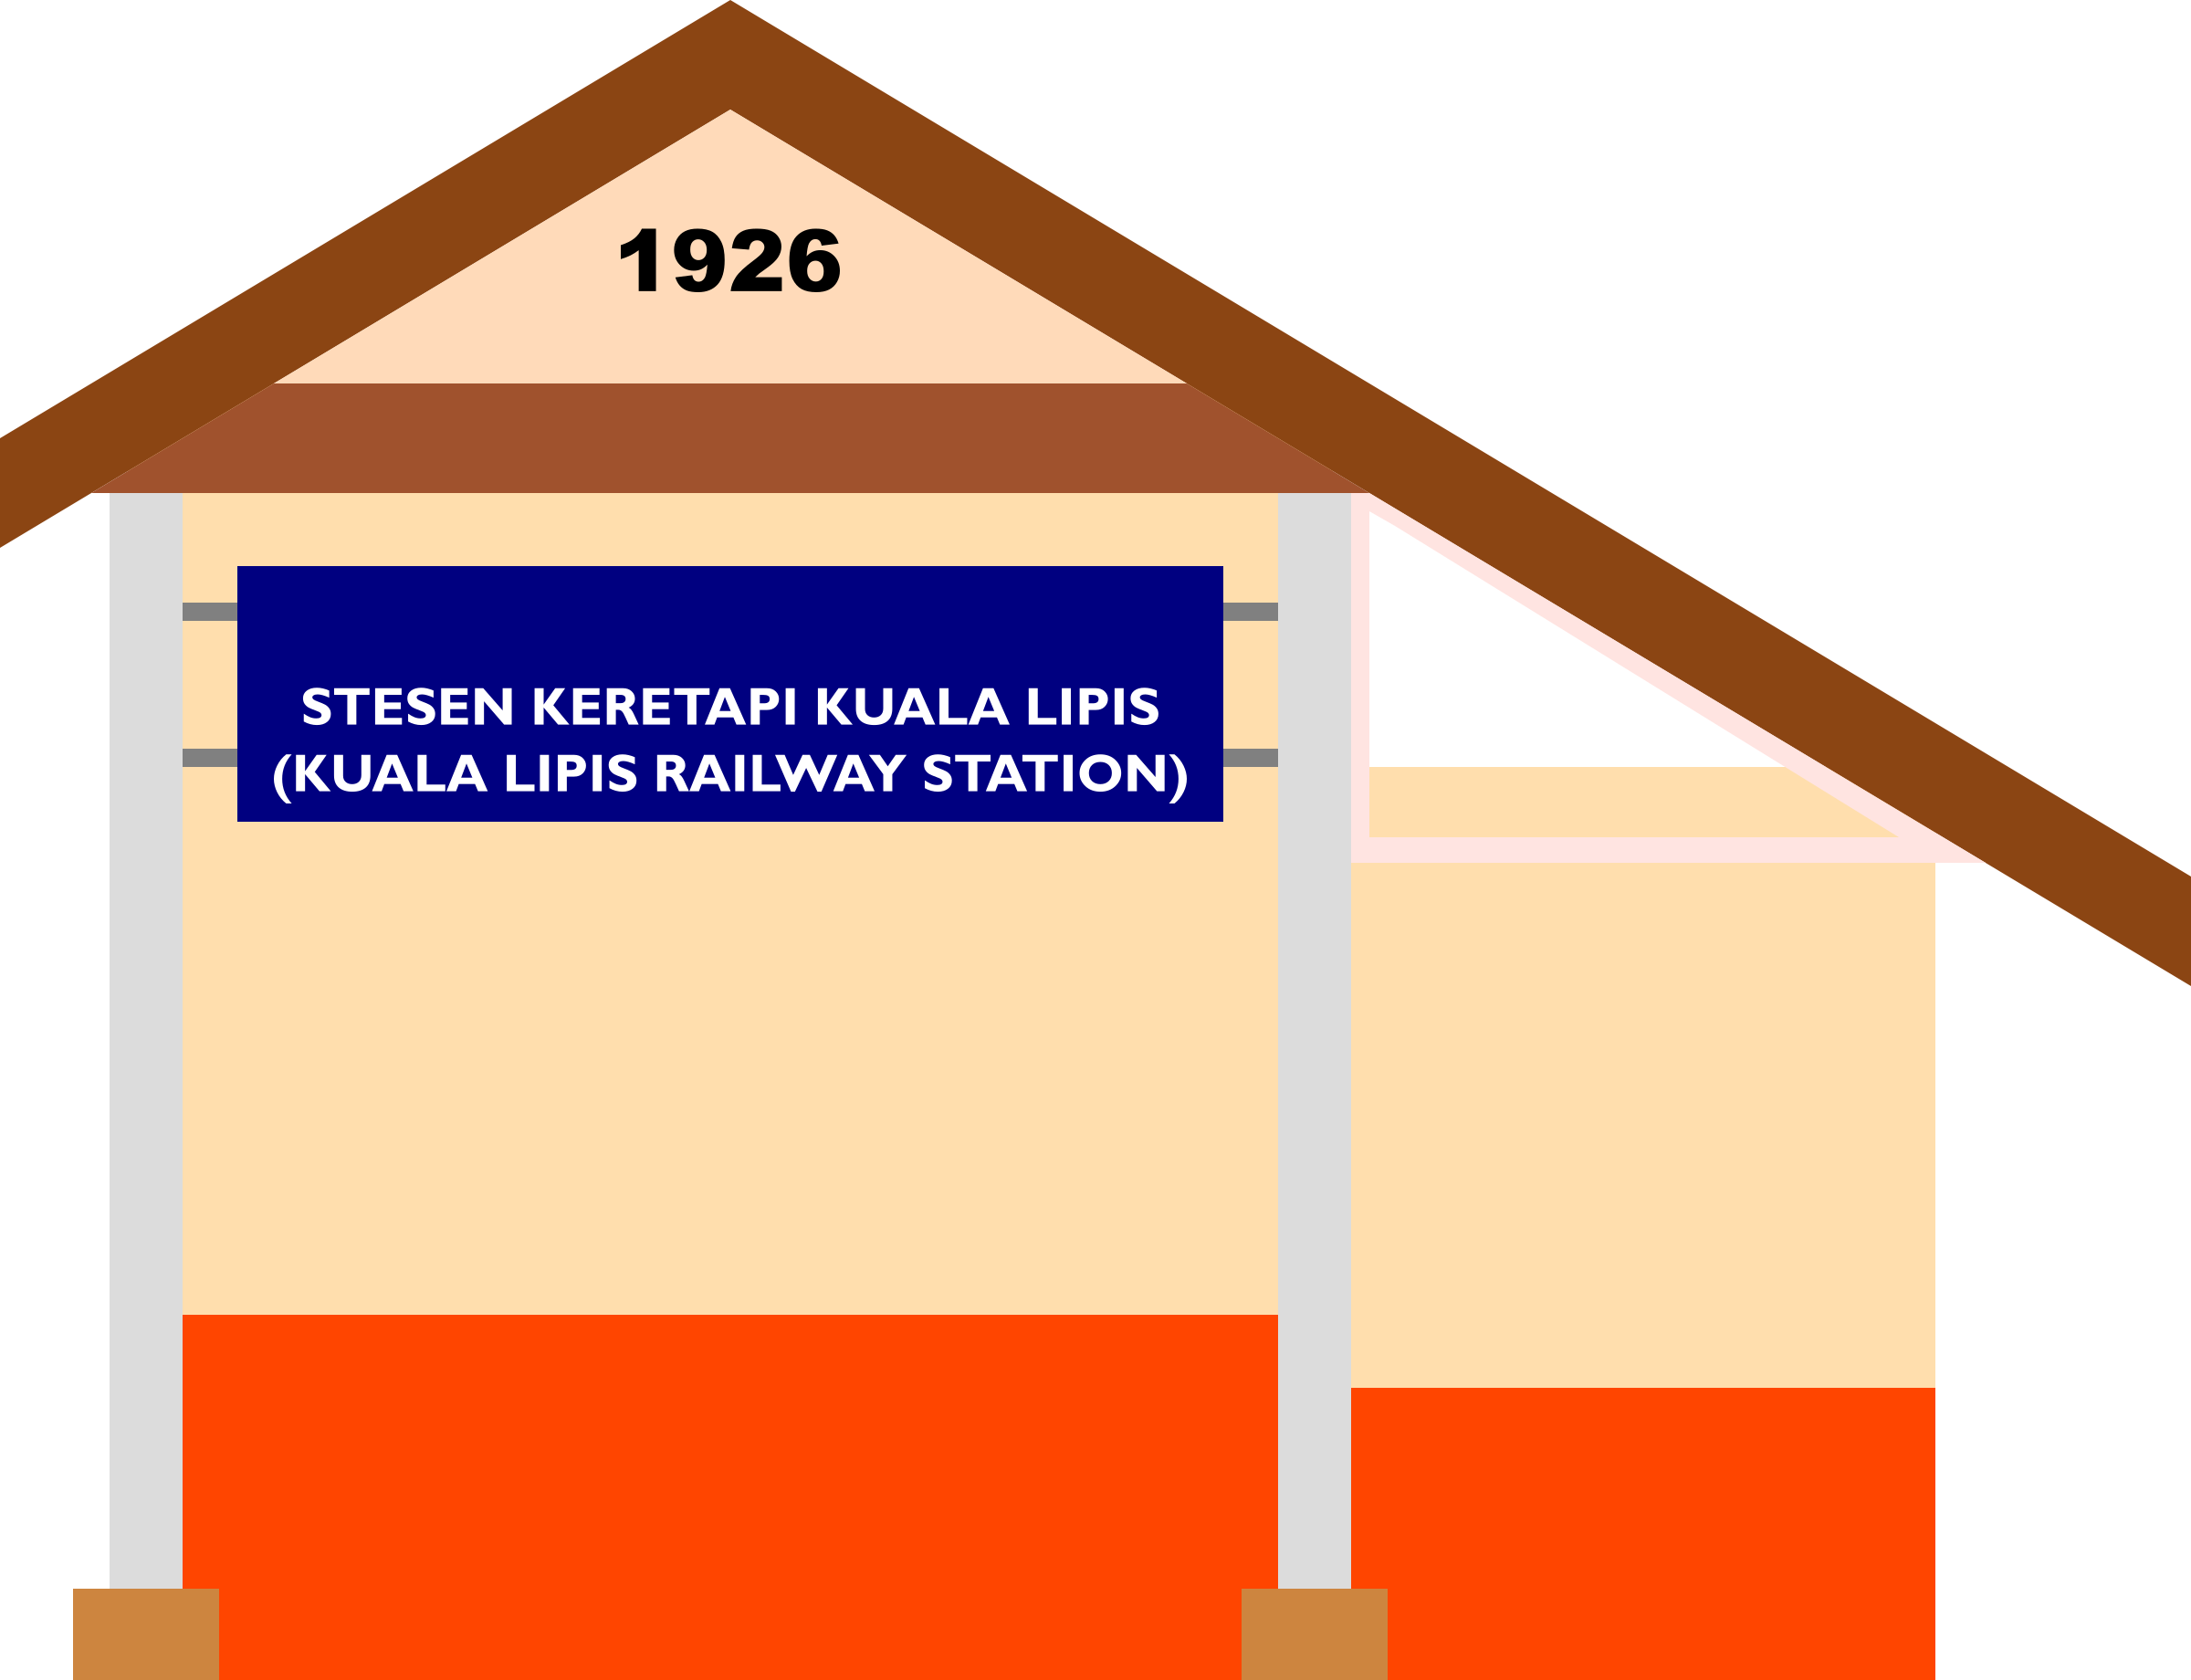 Lipis Railway Station - Kuala Lipis Railway Station (2400x1840)